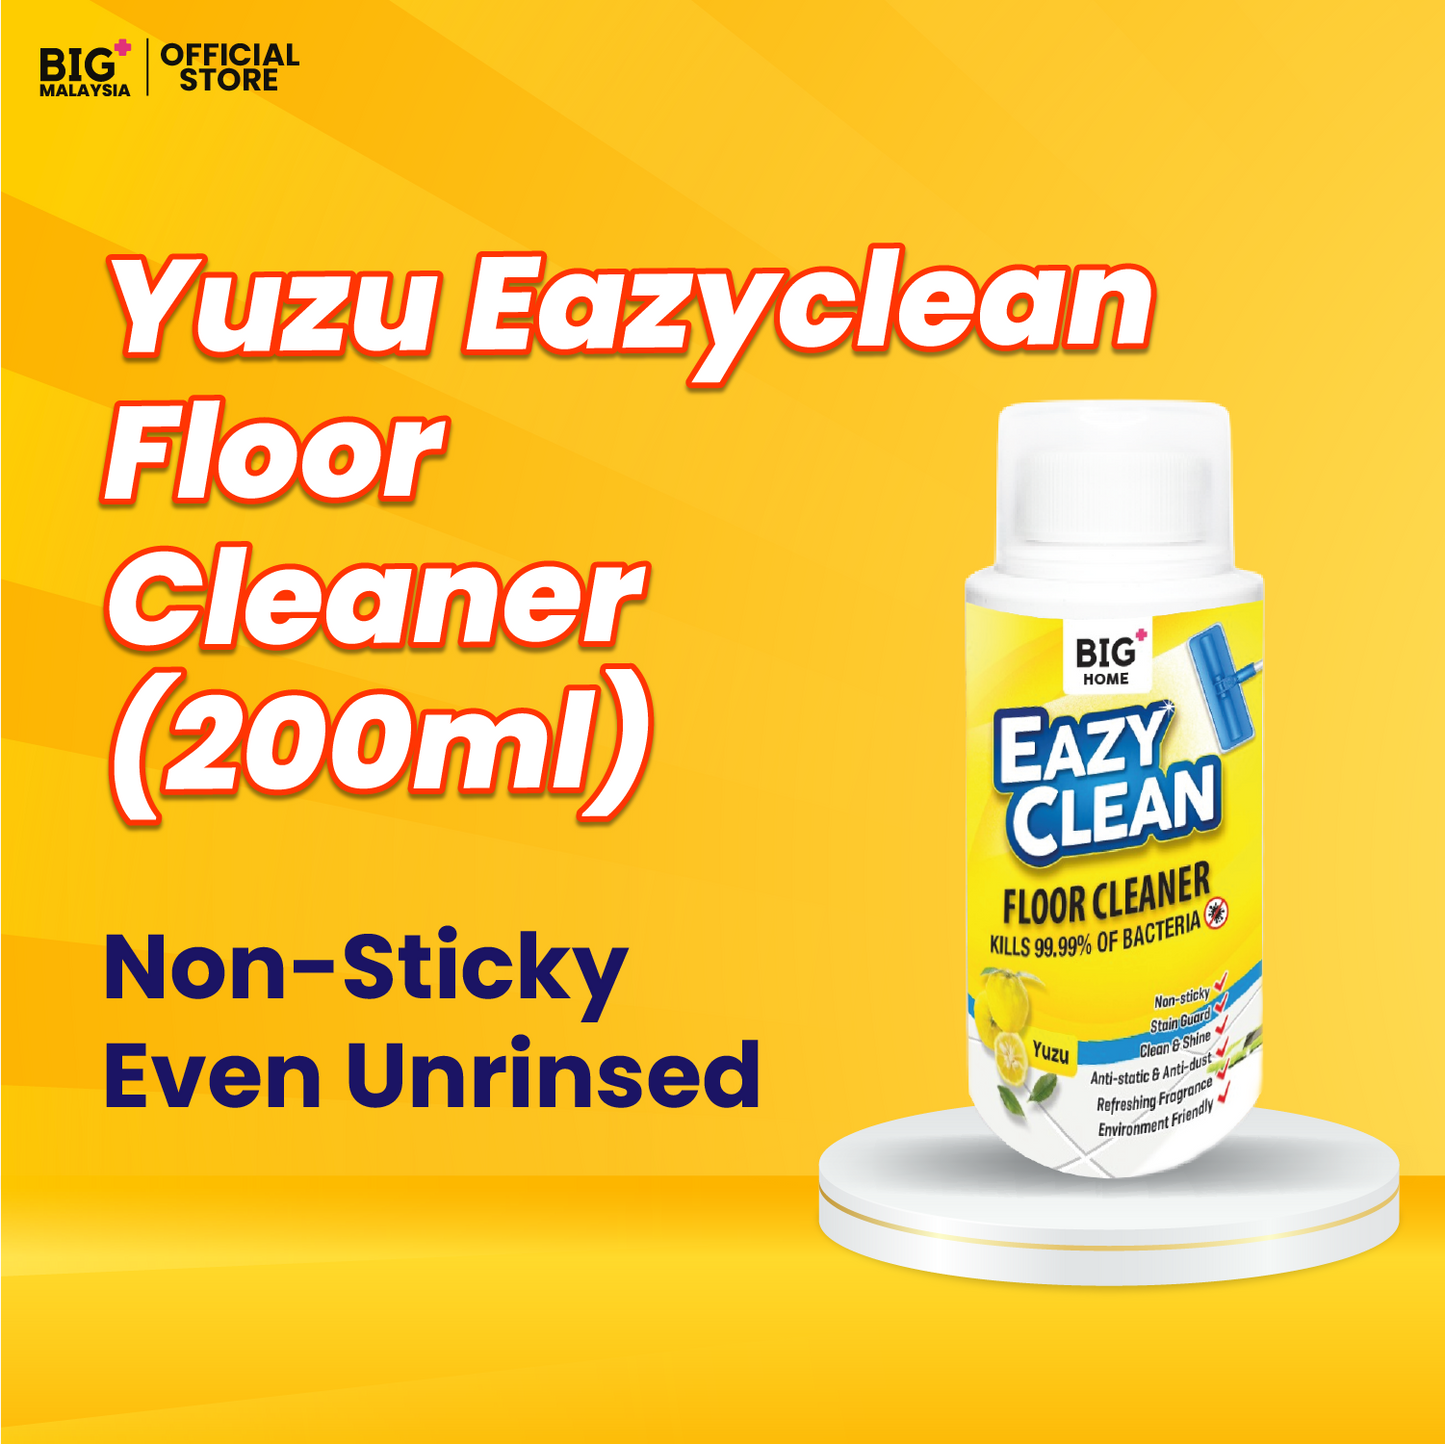 BIG+ EazyClean Yuzu Floor Cleaner (200ml)